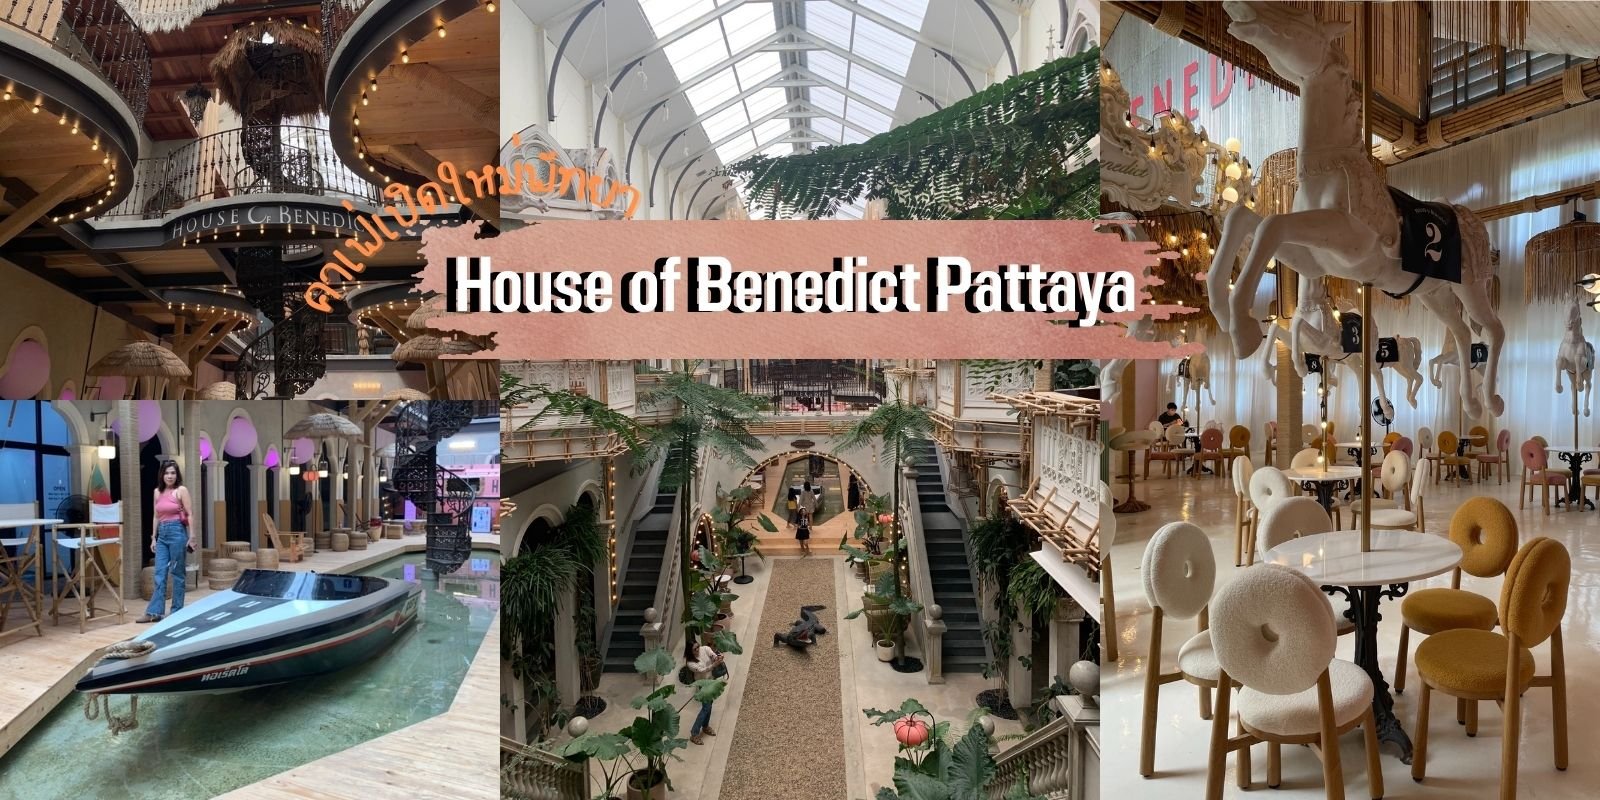 รีวิวคาเฟ่เปิดใหม่พัทยา House of Benedict Pattaya ถ่ายรูปสวย อัพรูปปังๆ